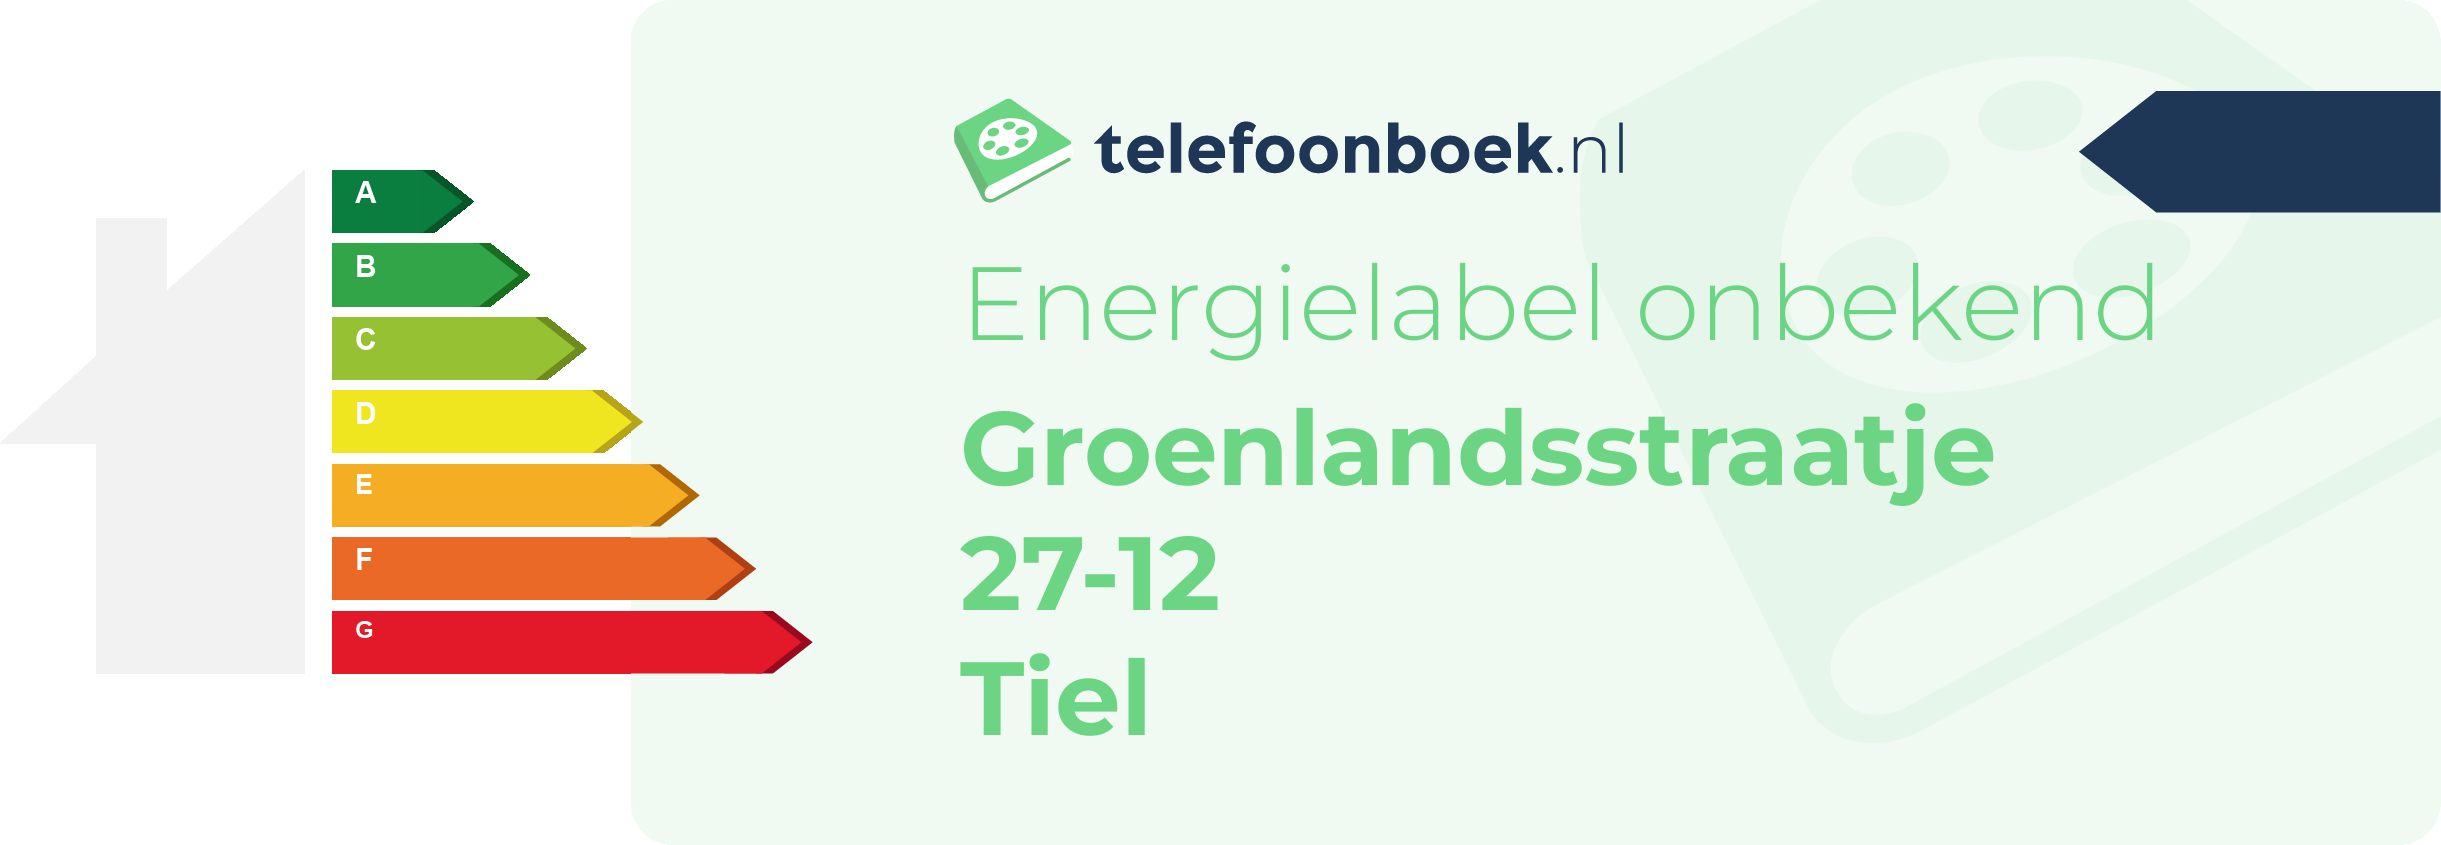 Energielabel Groenlandsstraatje 27-12 Tiel